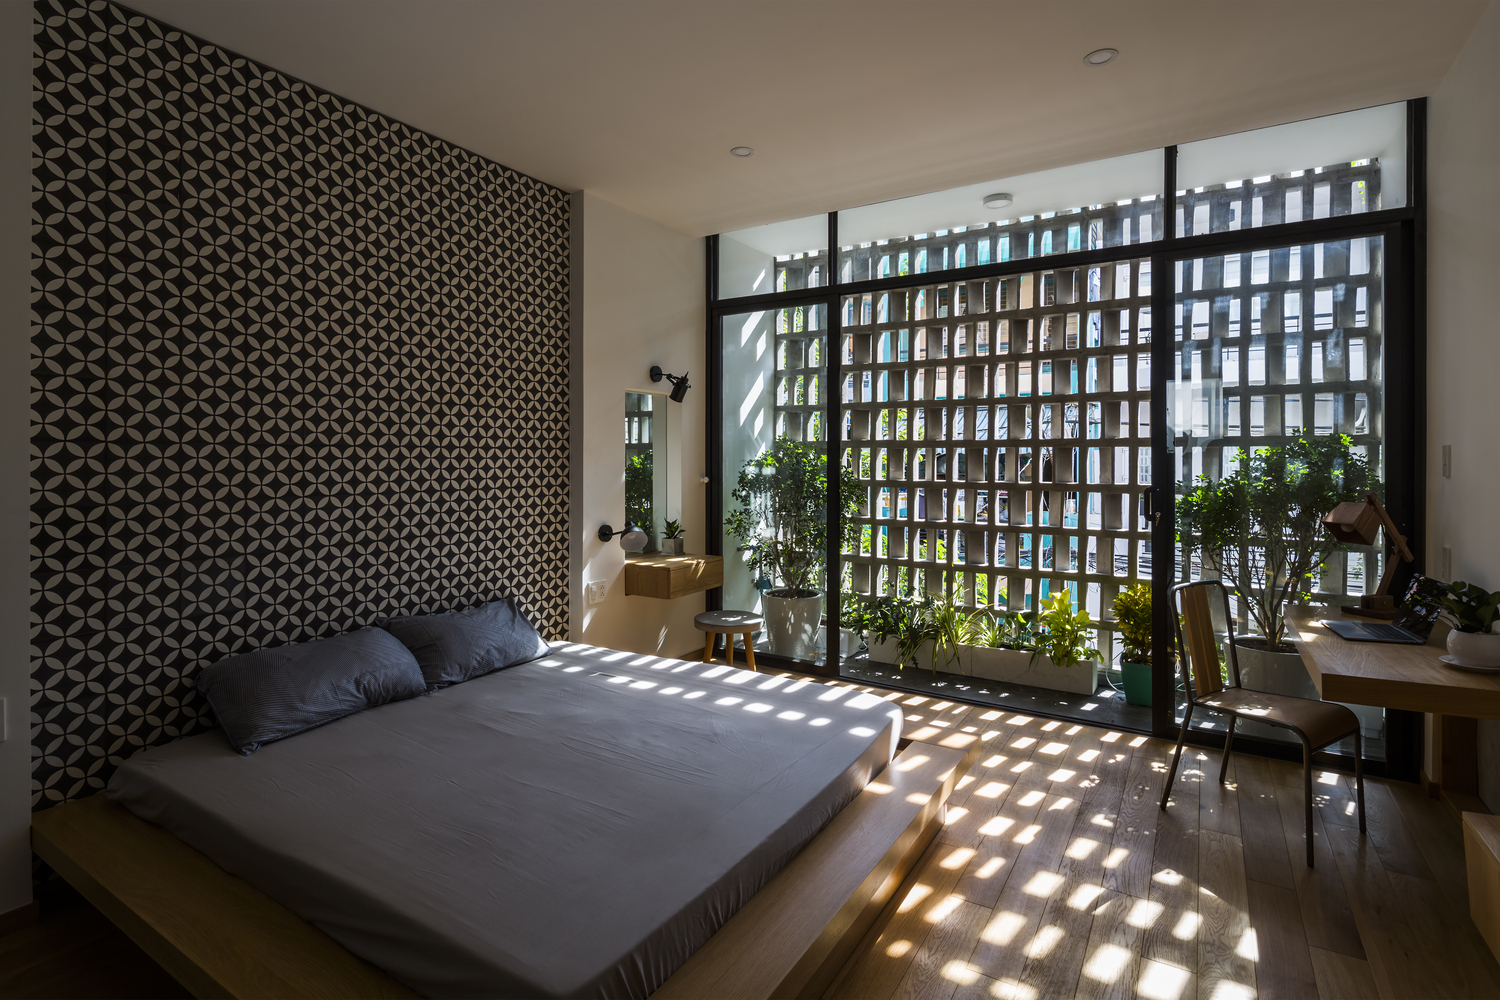 Hình ảnh phòng ngủ phong cách thiền tịnh với giường gỗ đặt sát nền, tường gạch bông, cửa kính trong suốt, trang trí cây xanh